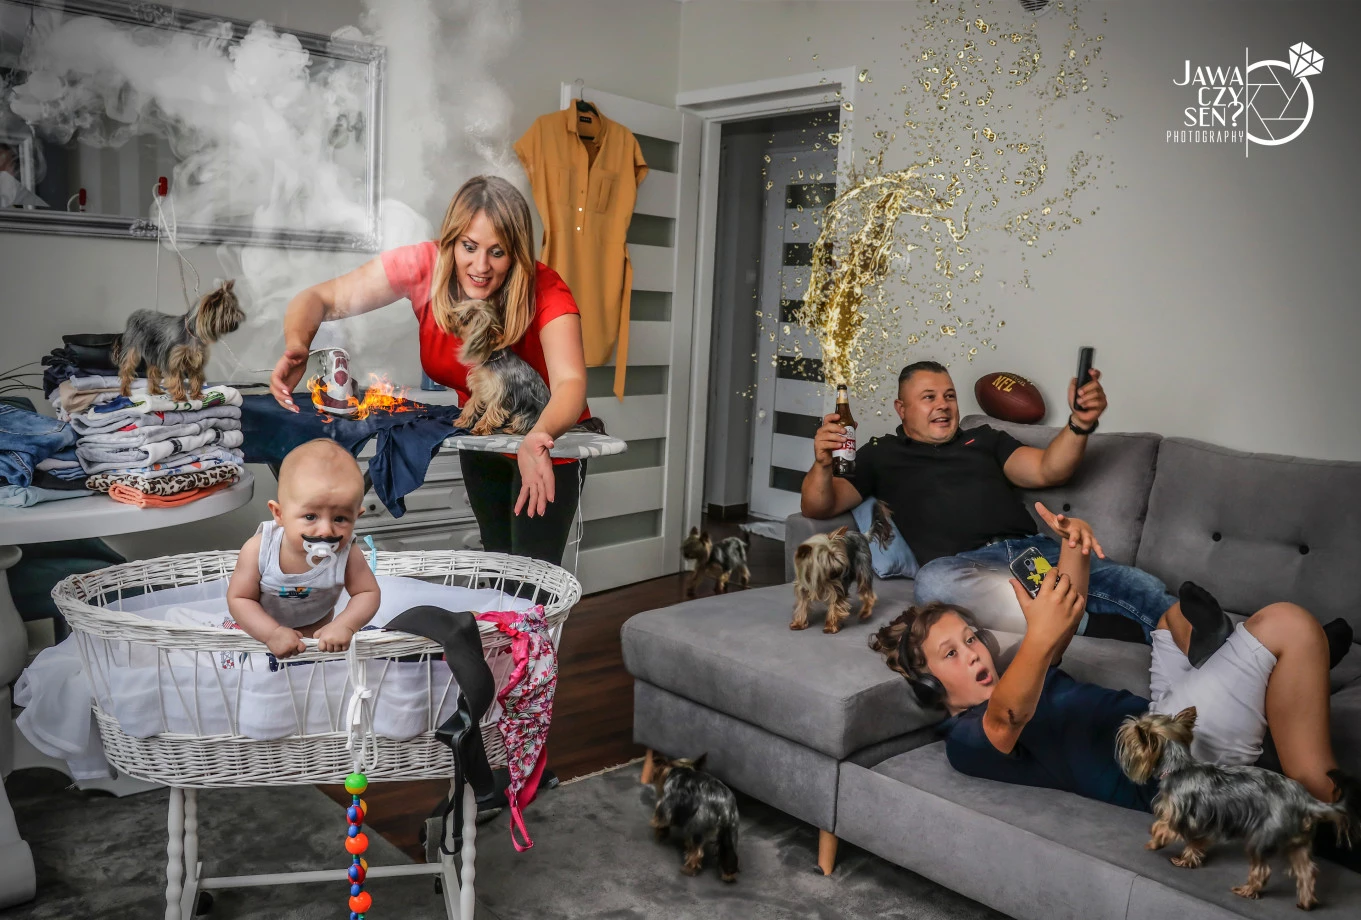 fotograf siedlce jawa-czy-sen-photography portfolio zdjecia rodzinne fotografia rodzinna sesja